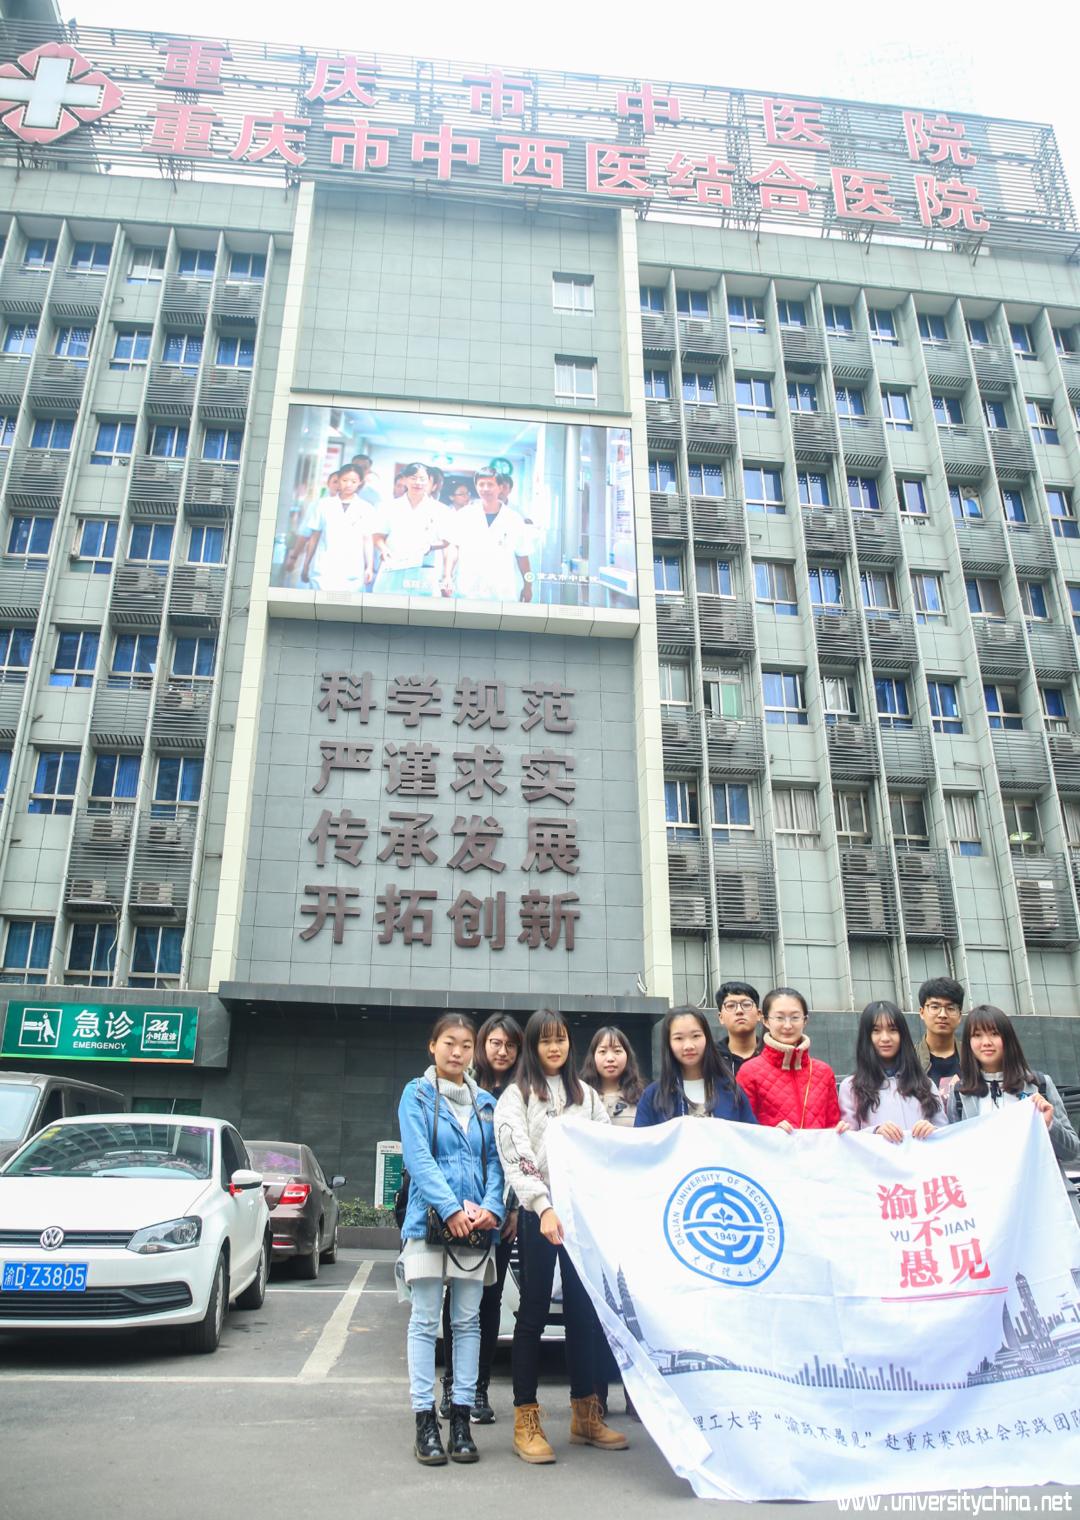 大连理工大学“渝践不愚见”社会实践团队定址重庆开始为期五天的寒假社会实践活动